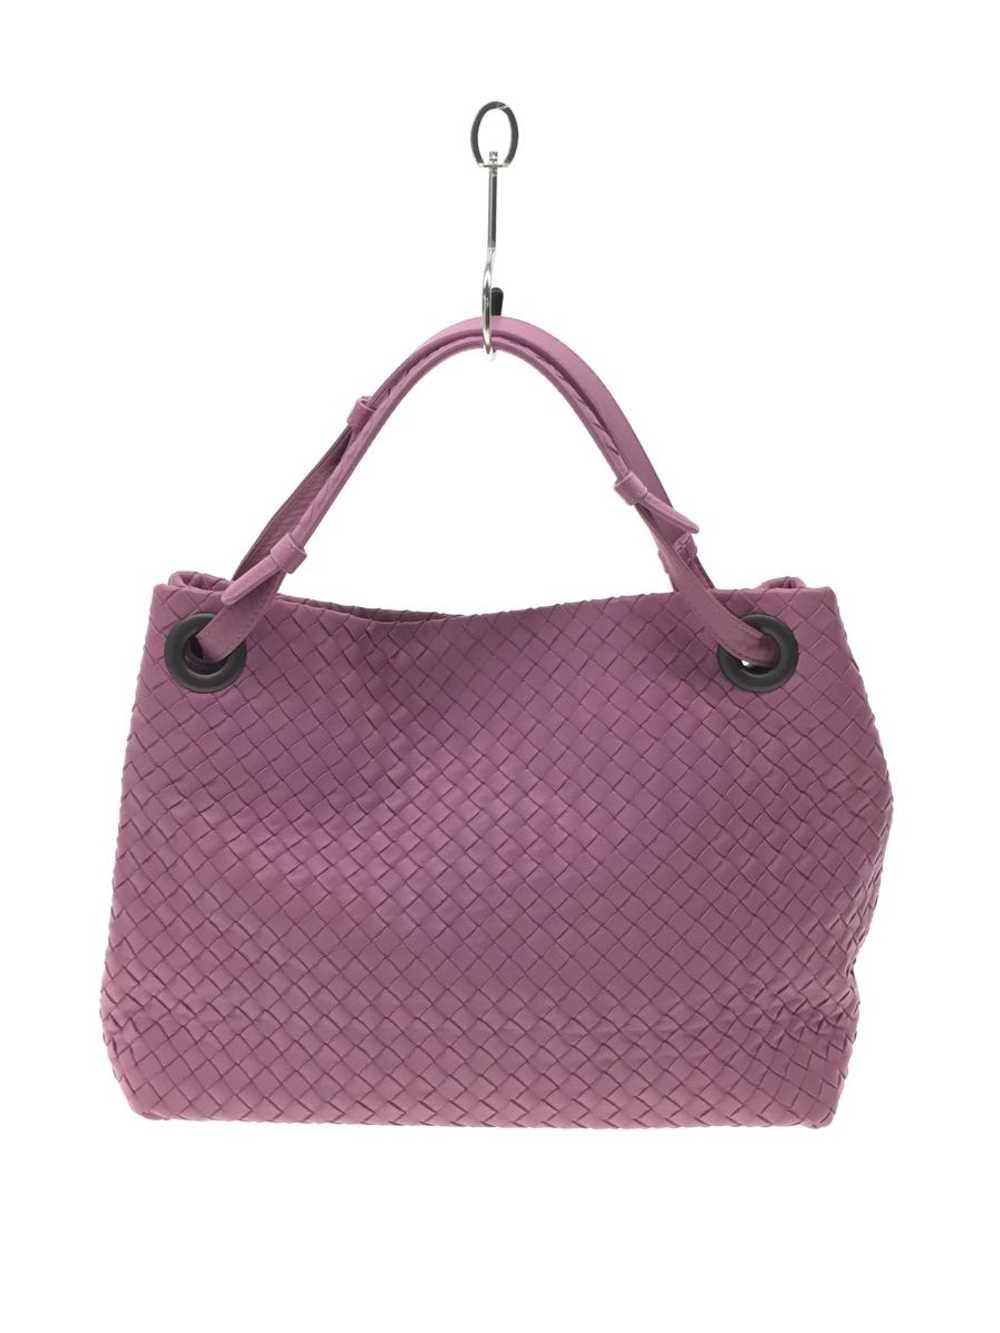 Bottega Veneta Garda Bag Purple _6896 - image 3